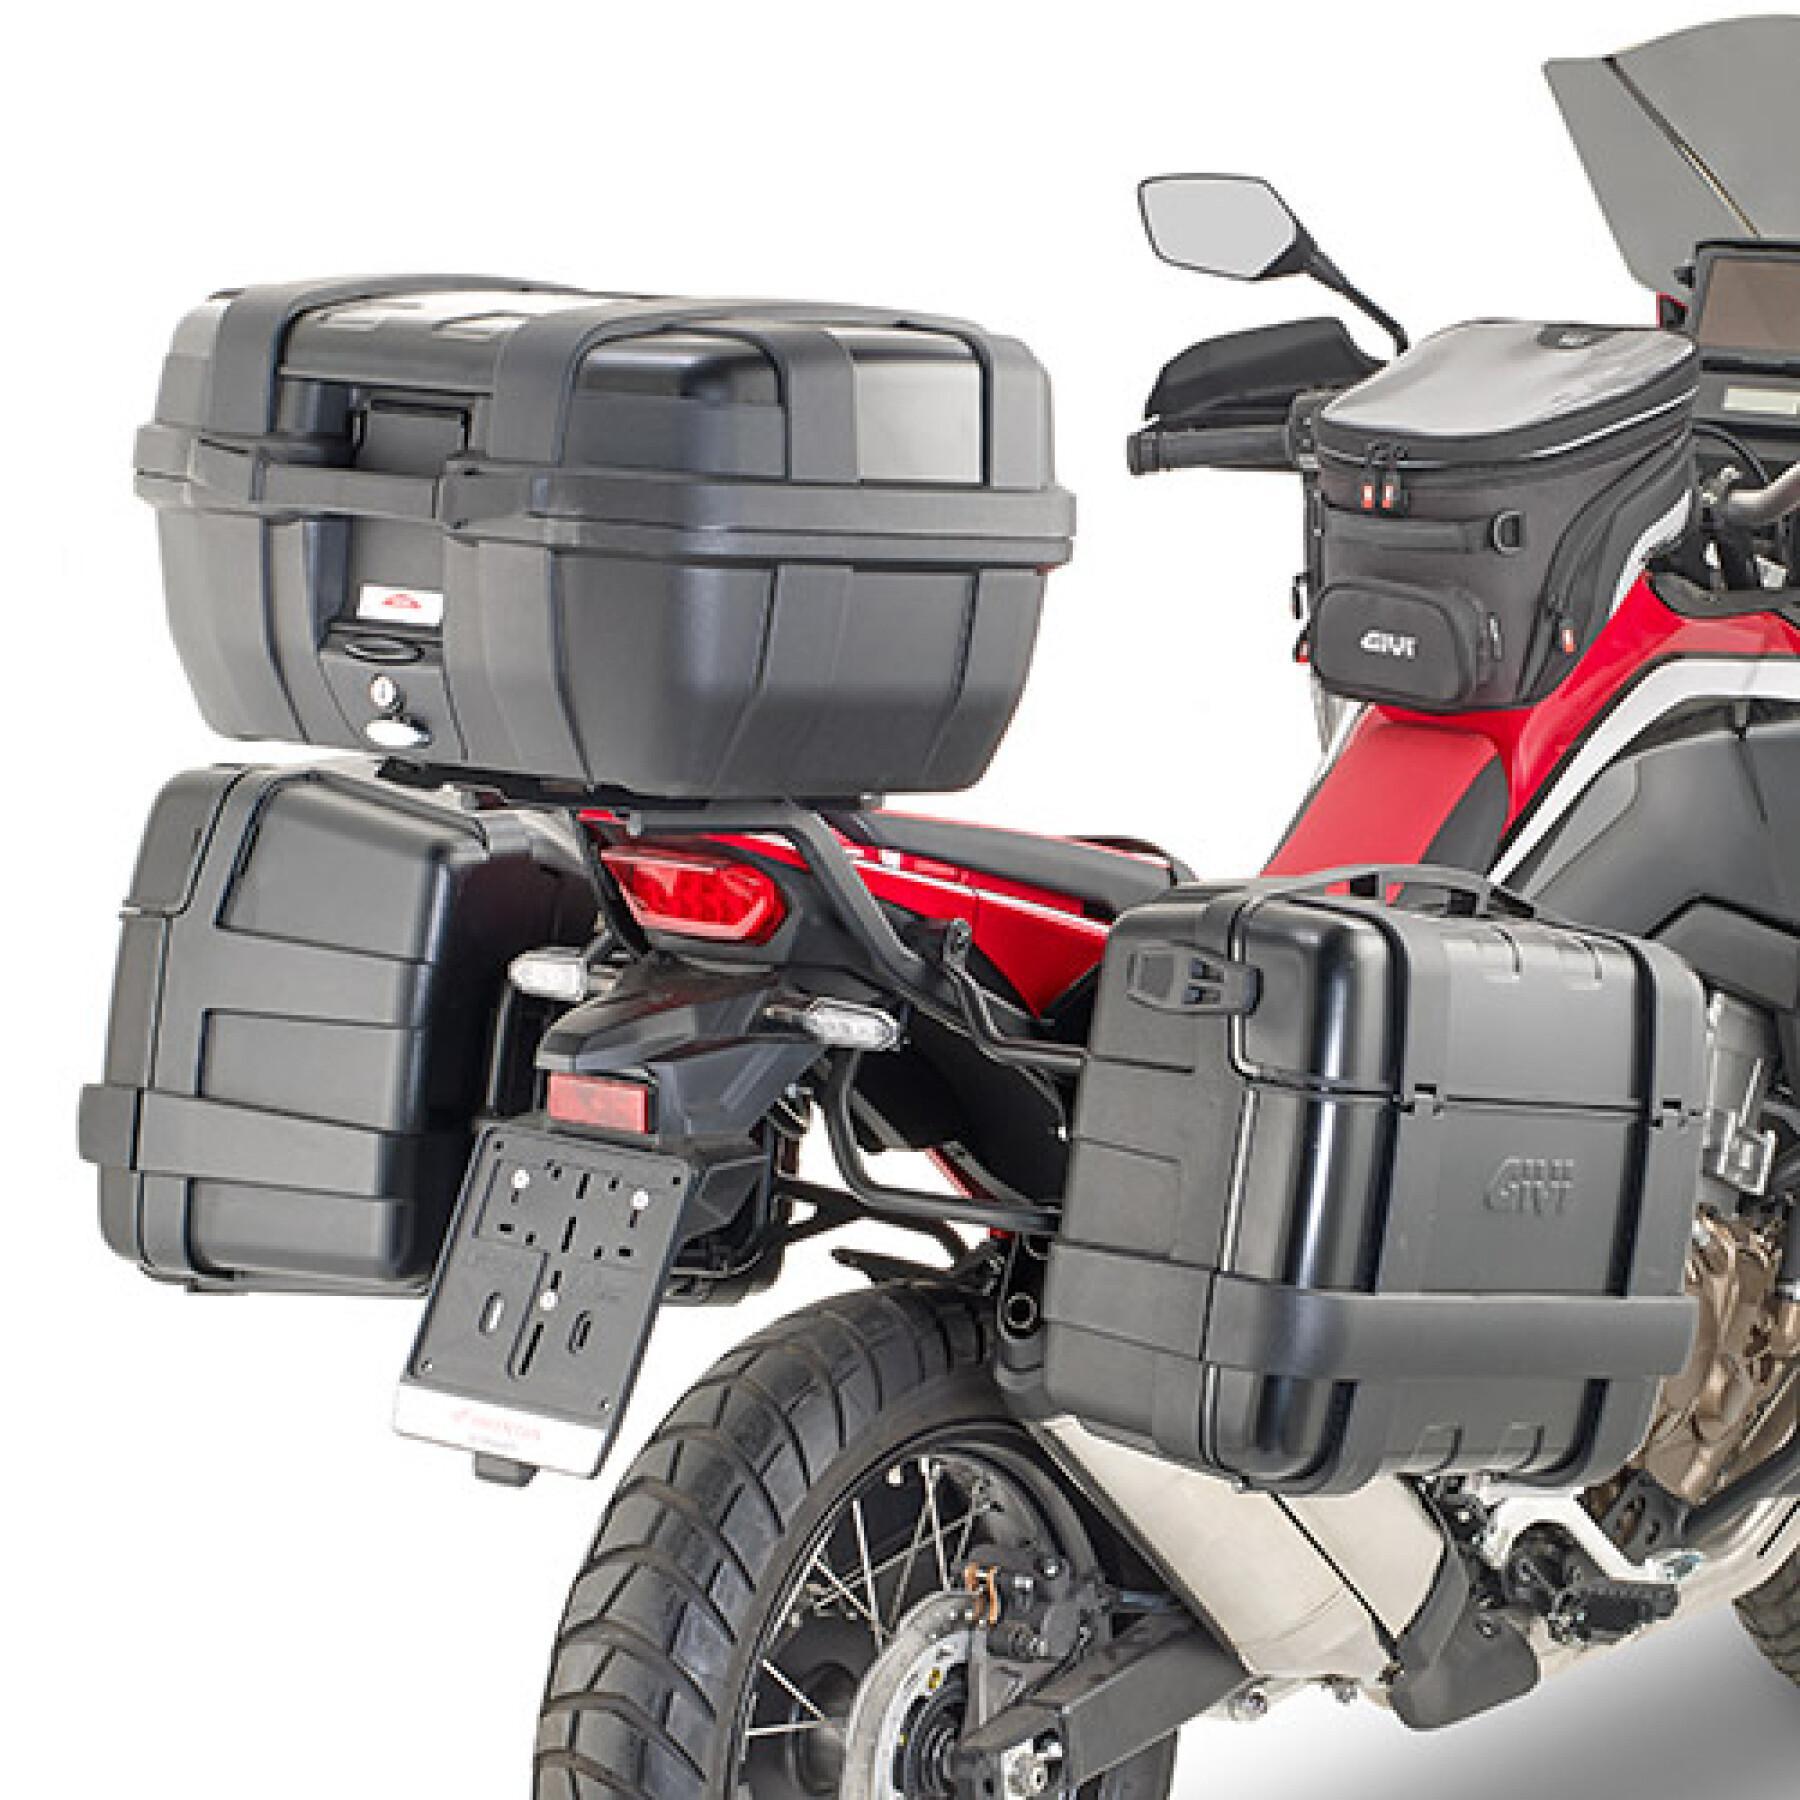 Soporte específico para la maleta lateral de la moto Givi Pl One Monokey Honda Crf 1100L Africa Twin (20 À 21)